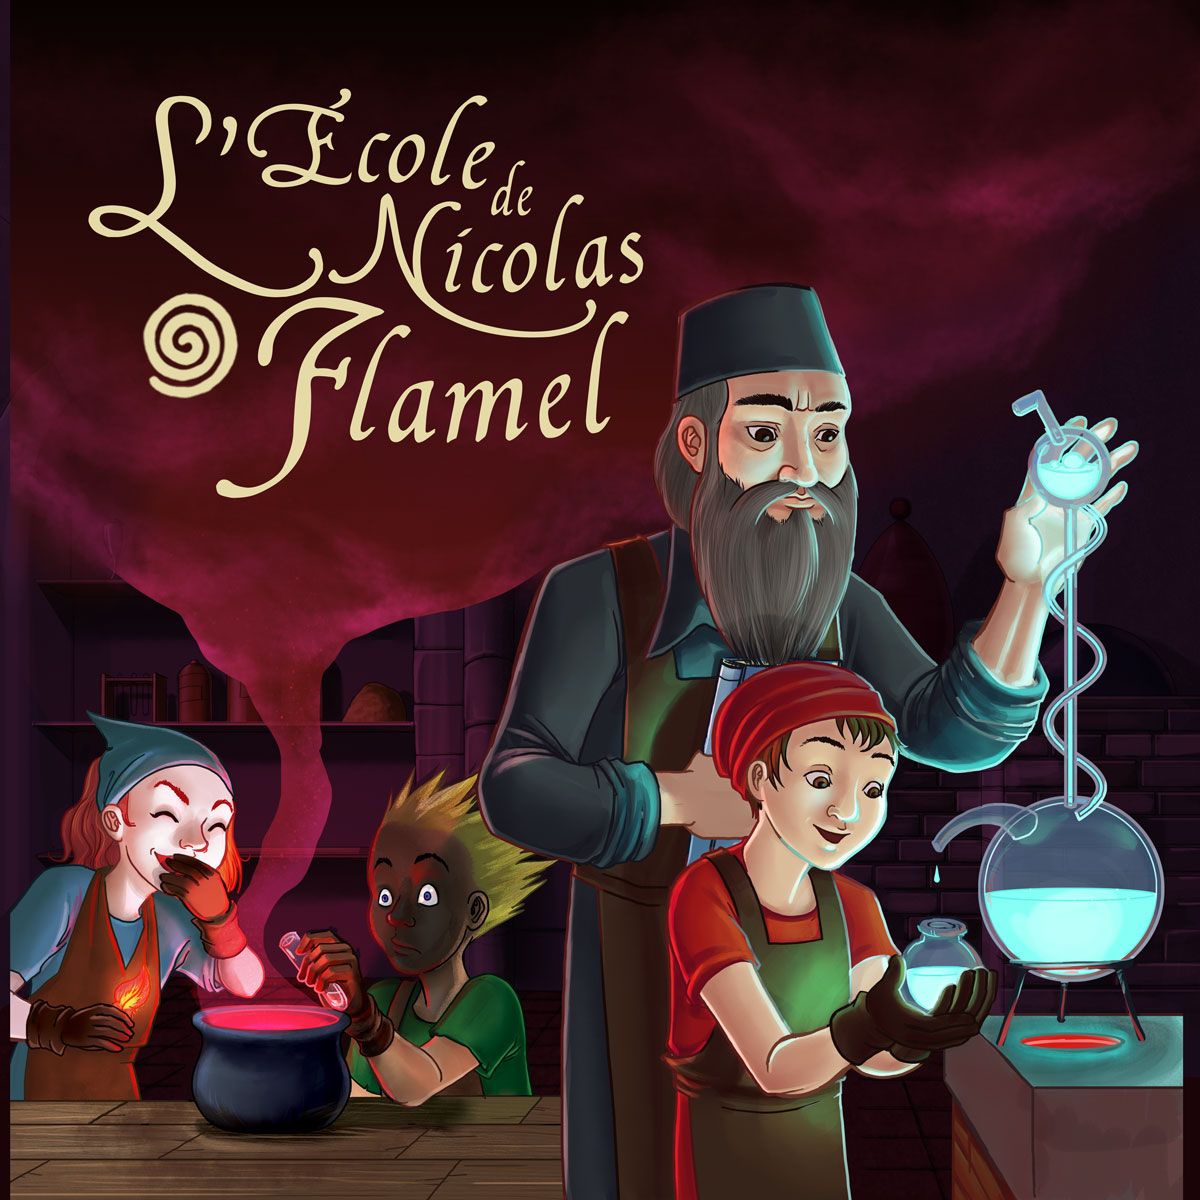 L’école de Nicolas Flamel : Illustration pour jeu de société